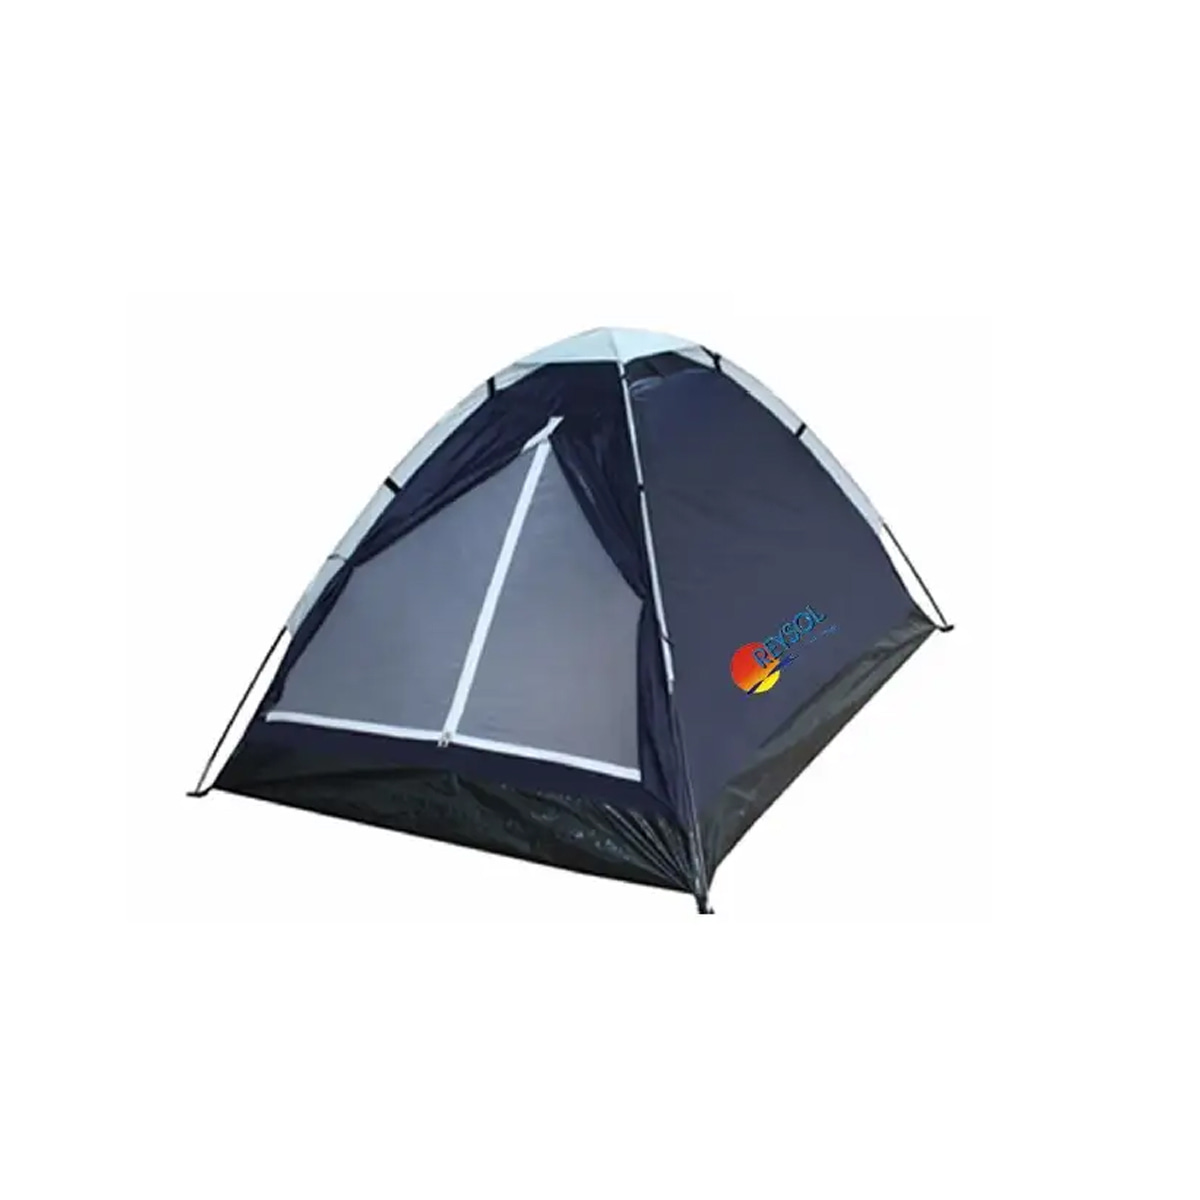 Carpa Camping Igloo 2 Personas - MundoTrabajo